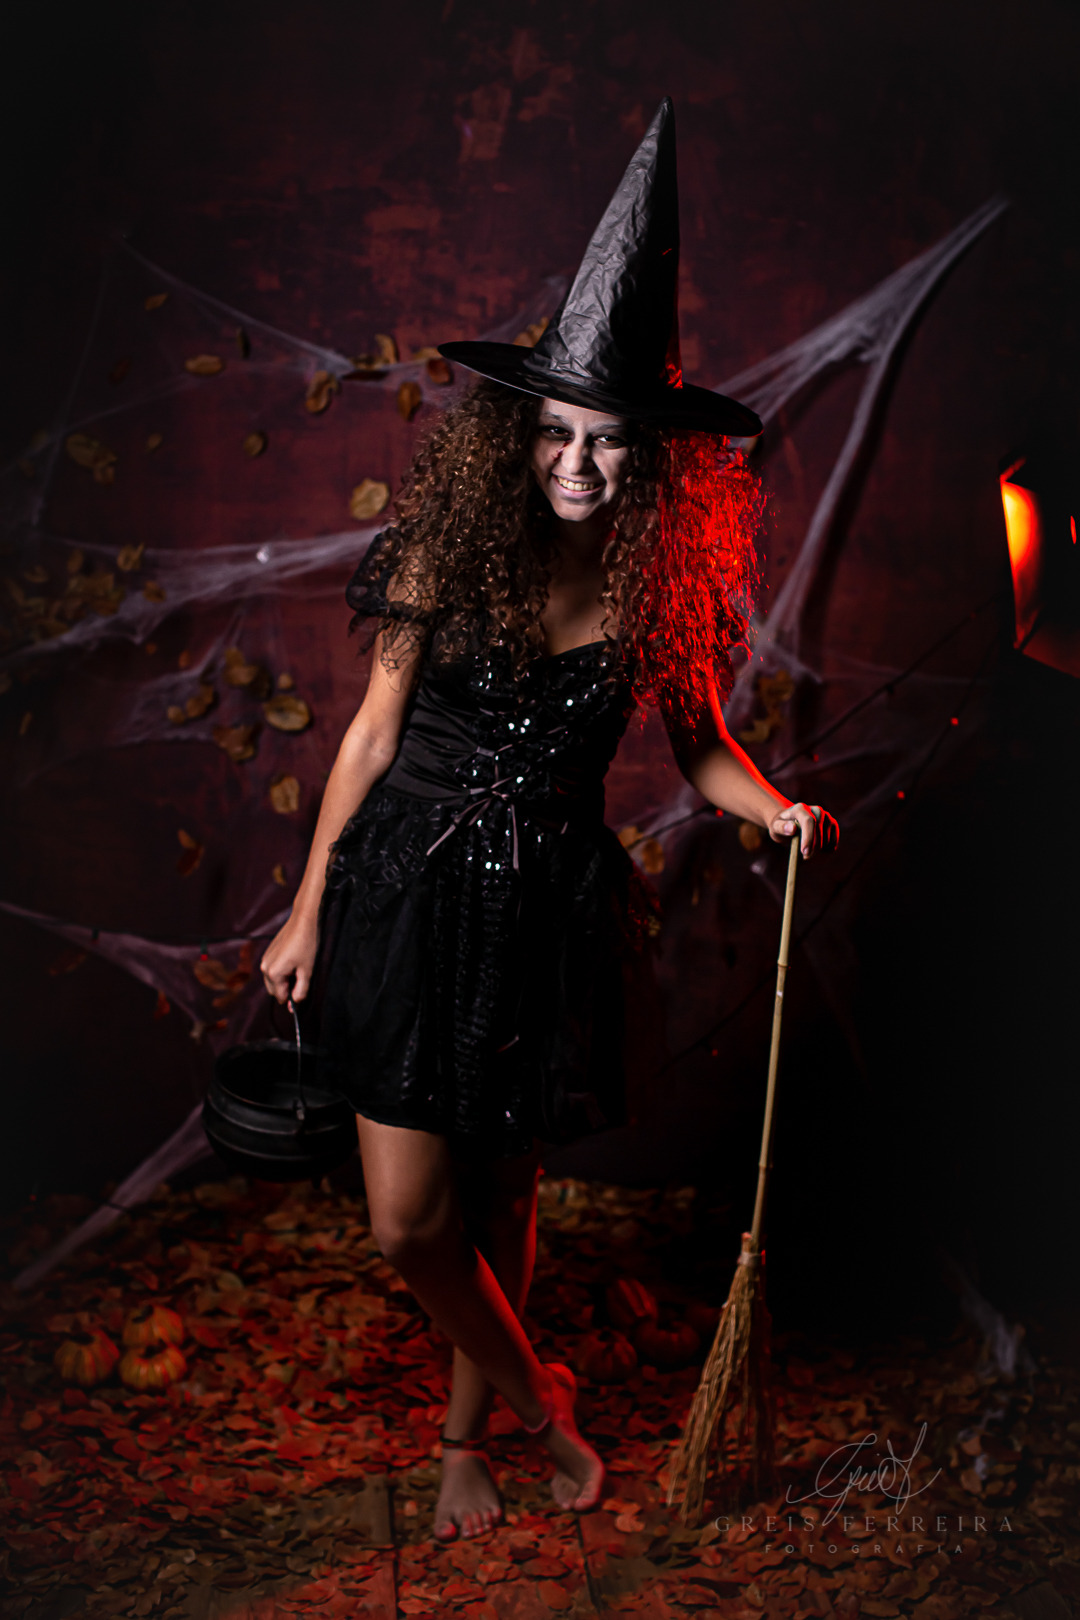 Fantasias de Halloween divertidas para a família  Fantasias, Fantasia dia  das bruxas, Fantasias halloween